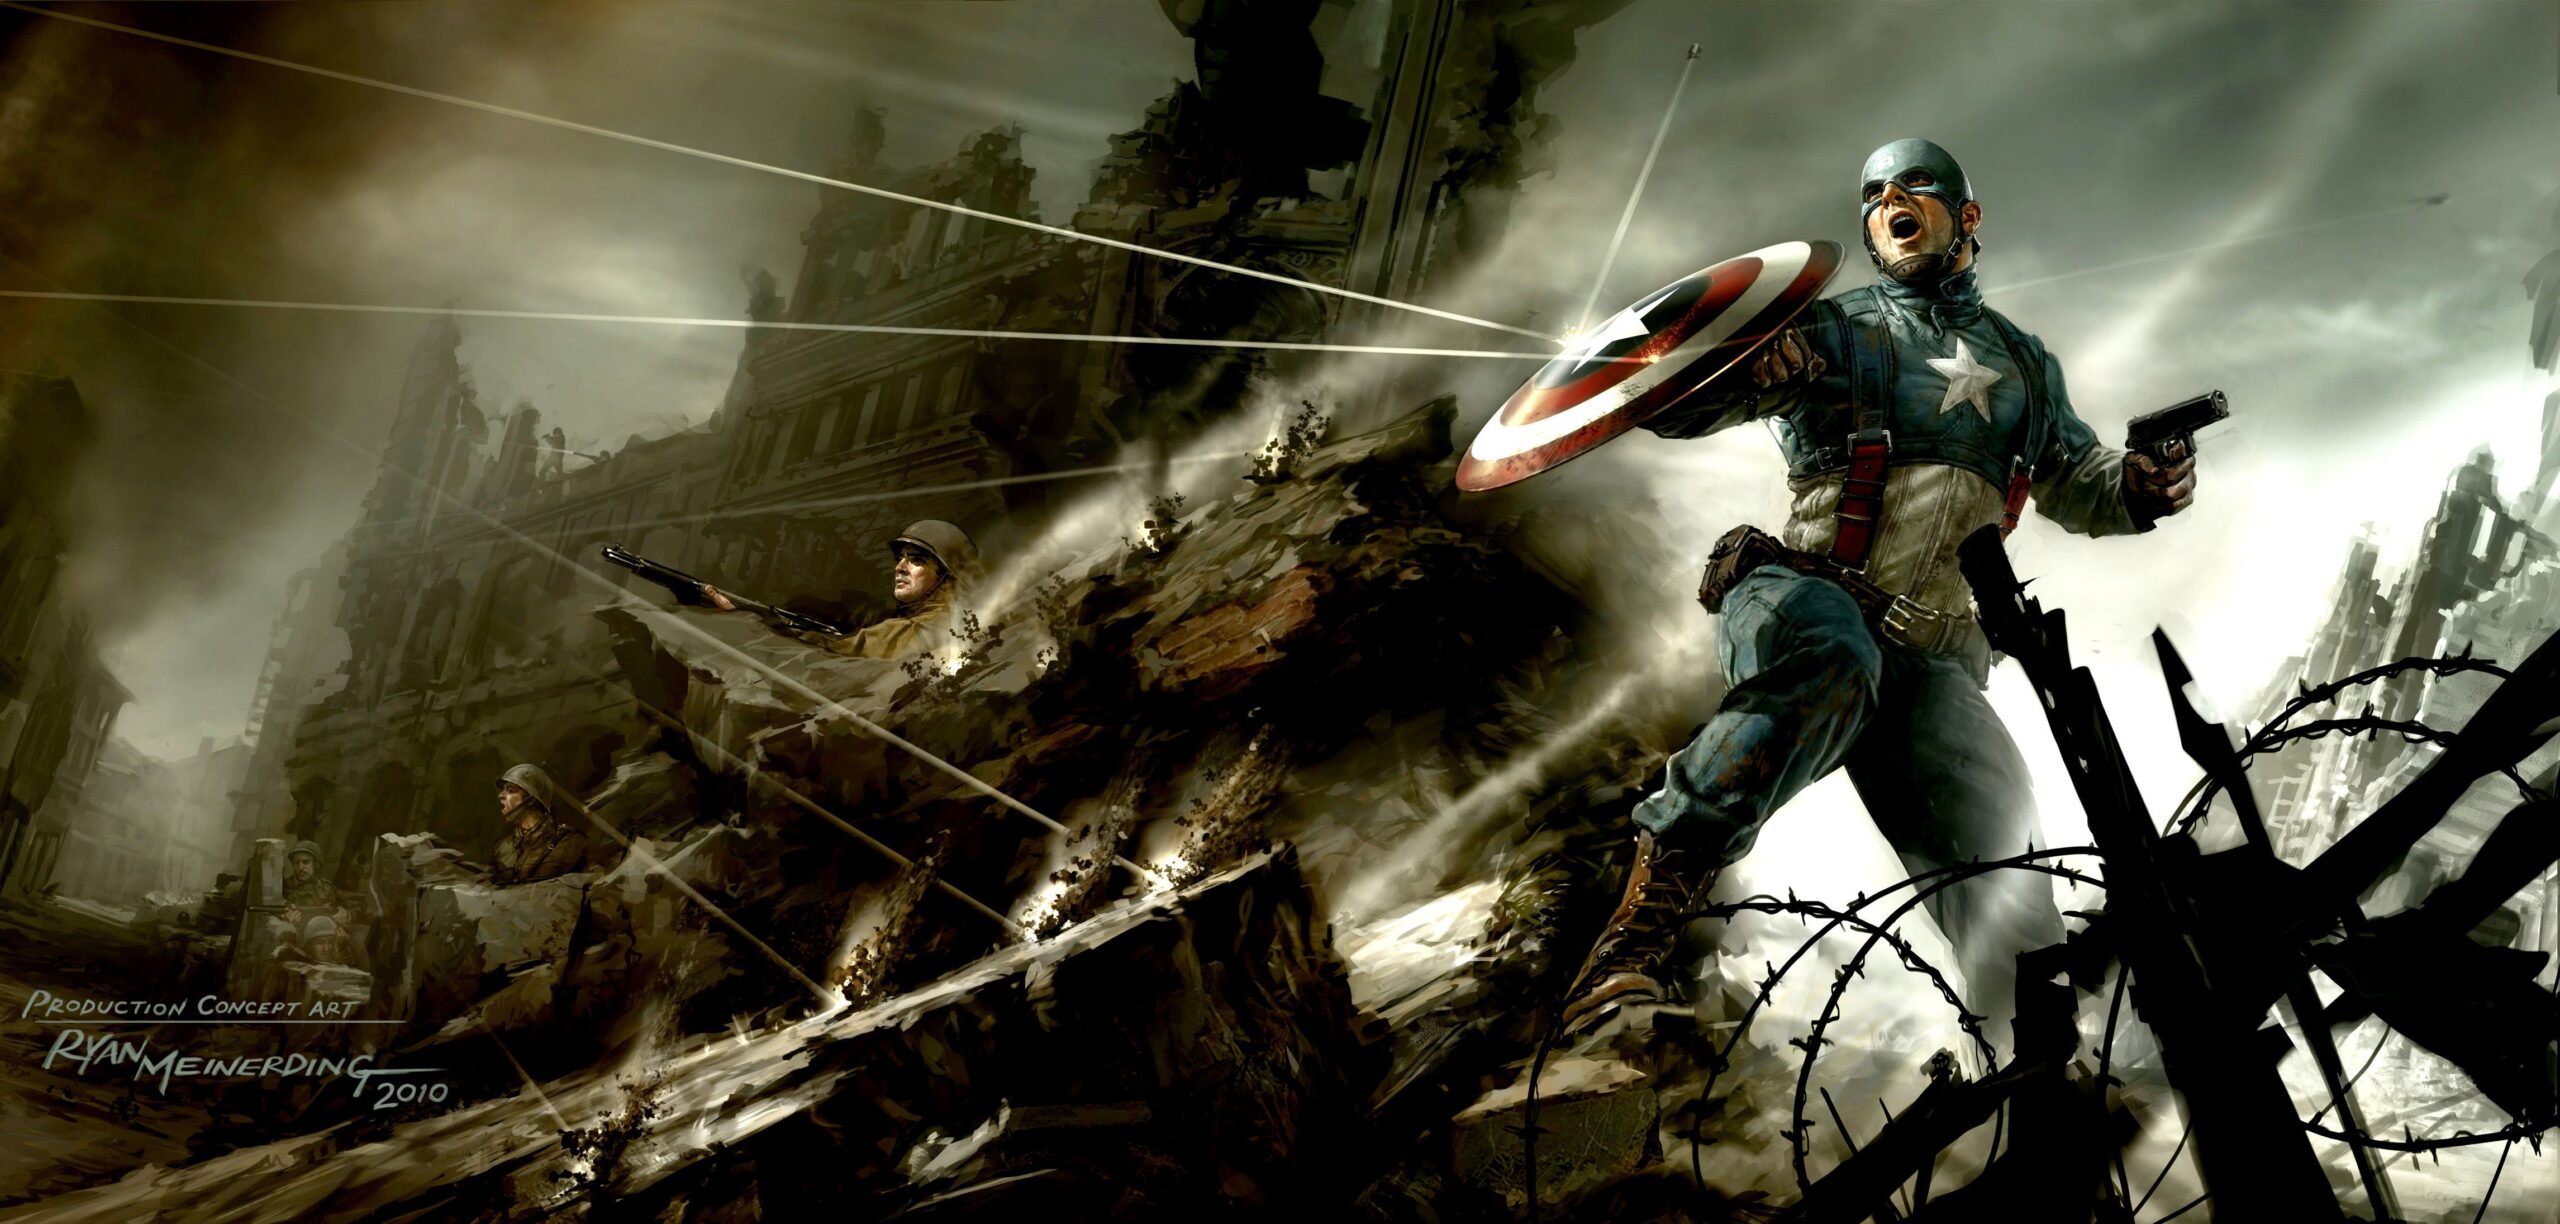 Captain America The First Avenger Artwork, 2K Superheroes, k